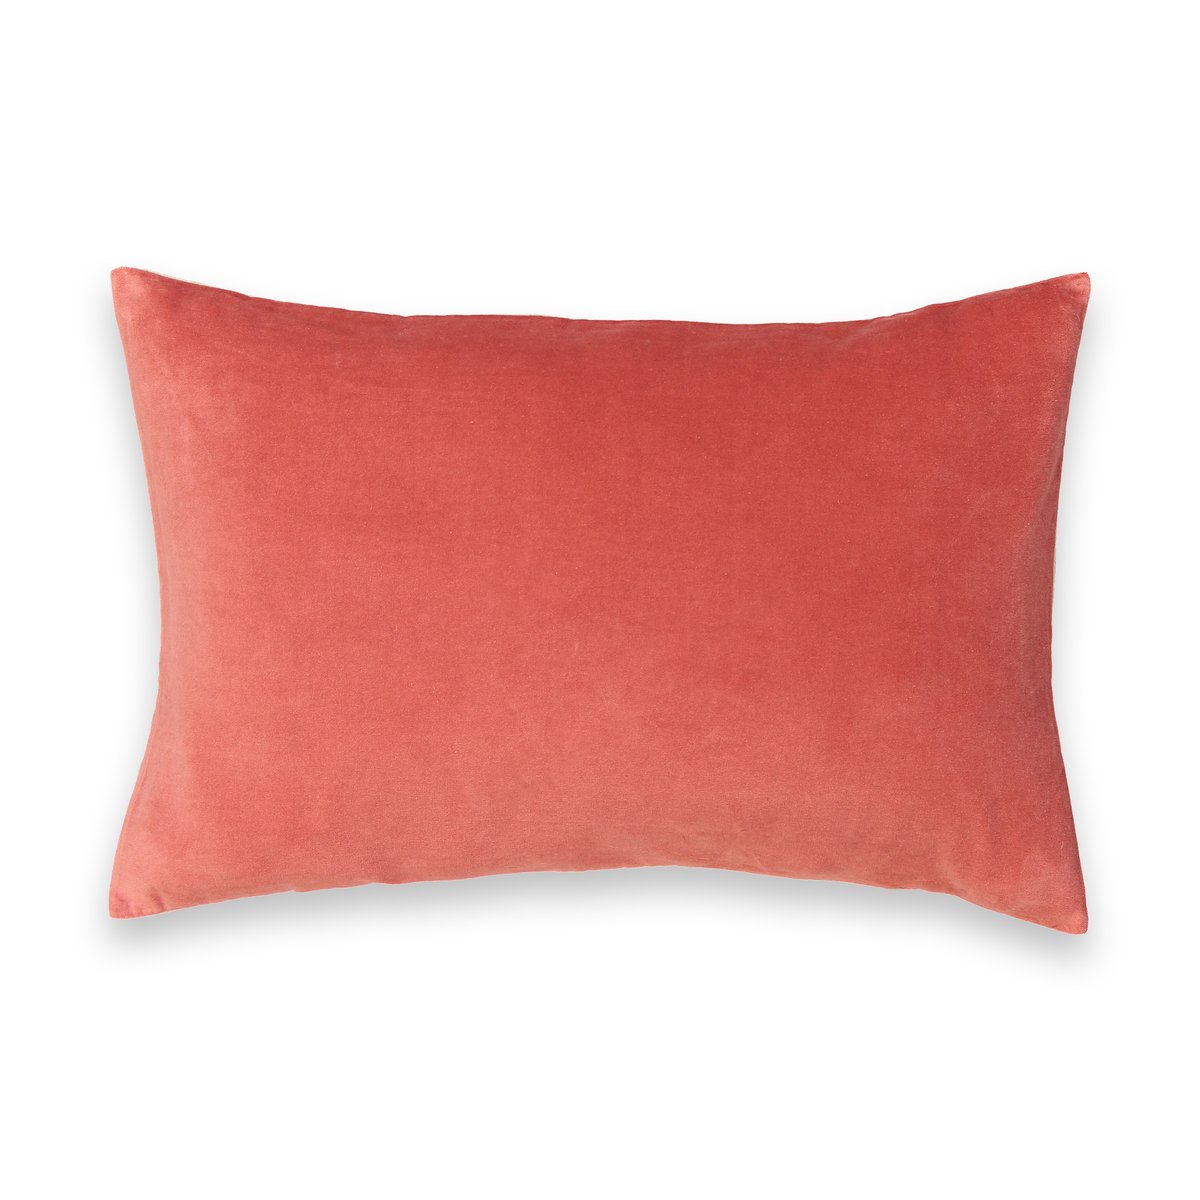 Чехол La Redoute На подушку из велюра VELVET 60 x 40 см розовый, размер 60 x 40 см - фото 1